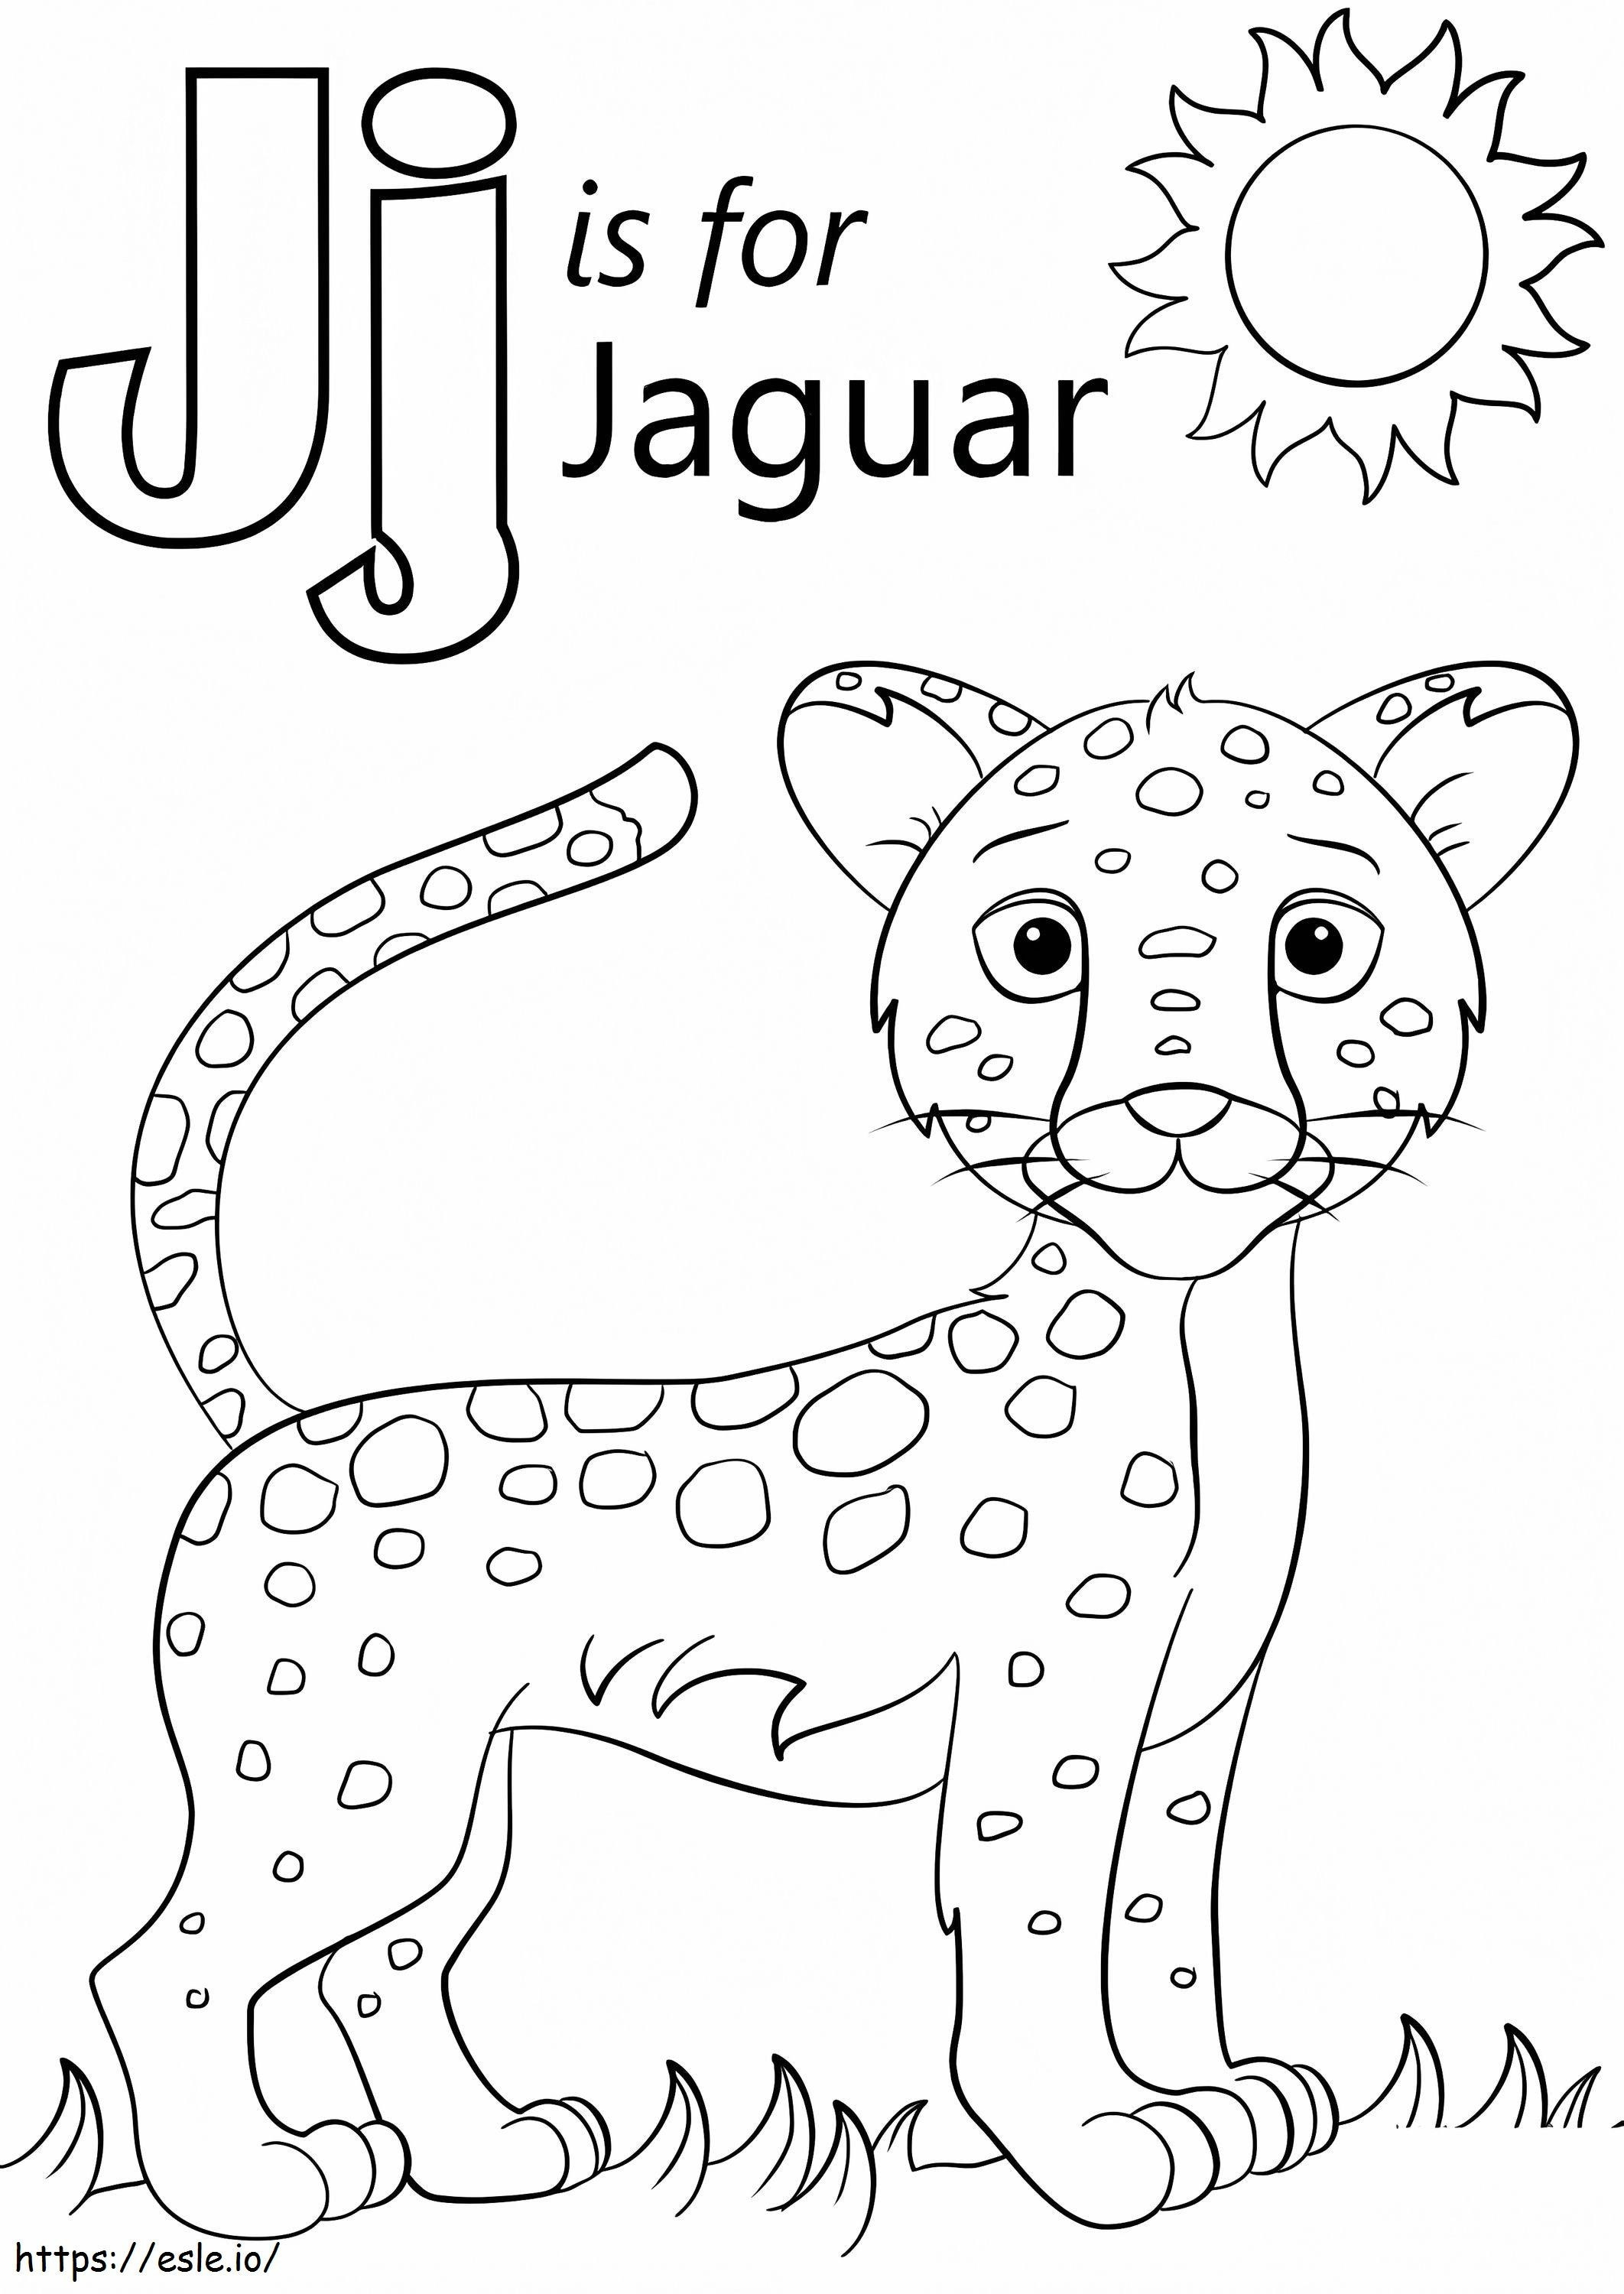 Letra J del jaguar para colorear